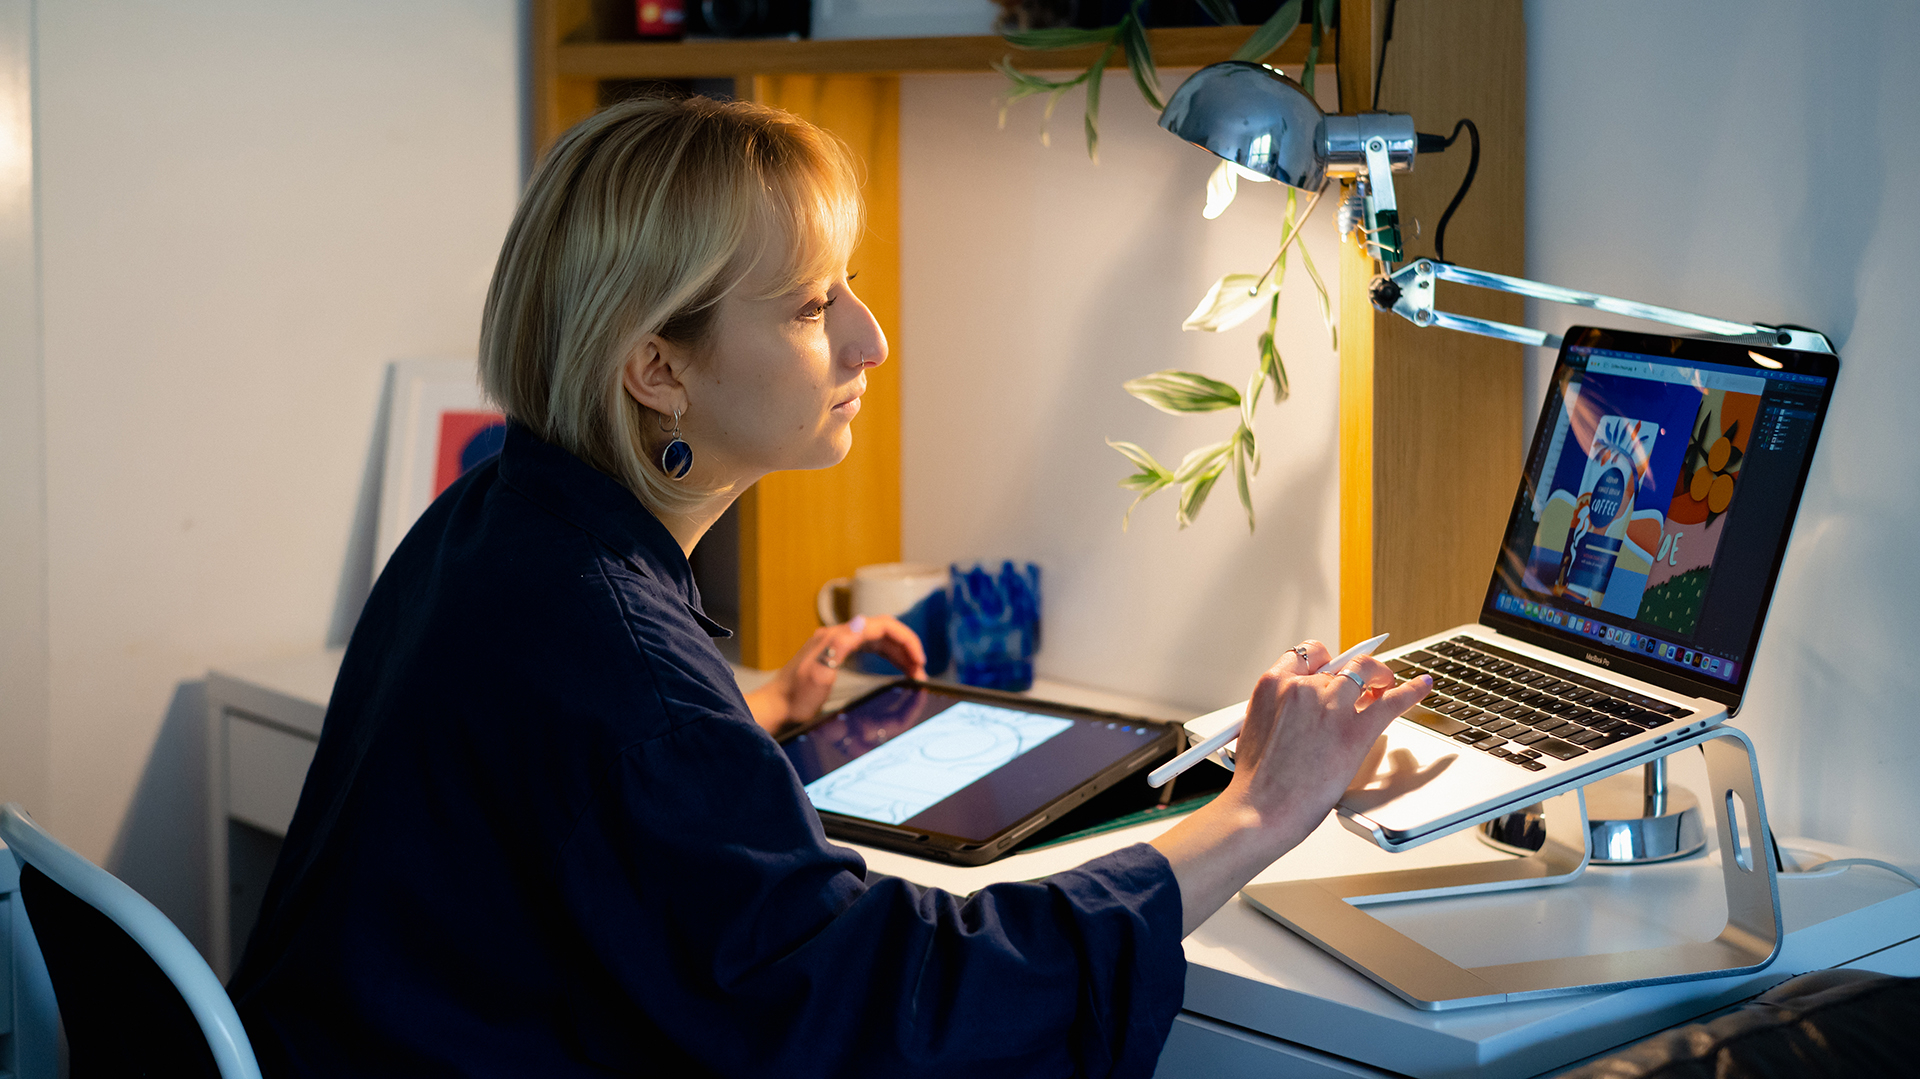 Kobieta siedząca przy biurku pisze na komputerze, trzymając w ręku rysik; w tle znajduje się tablet